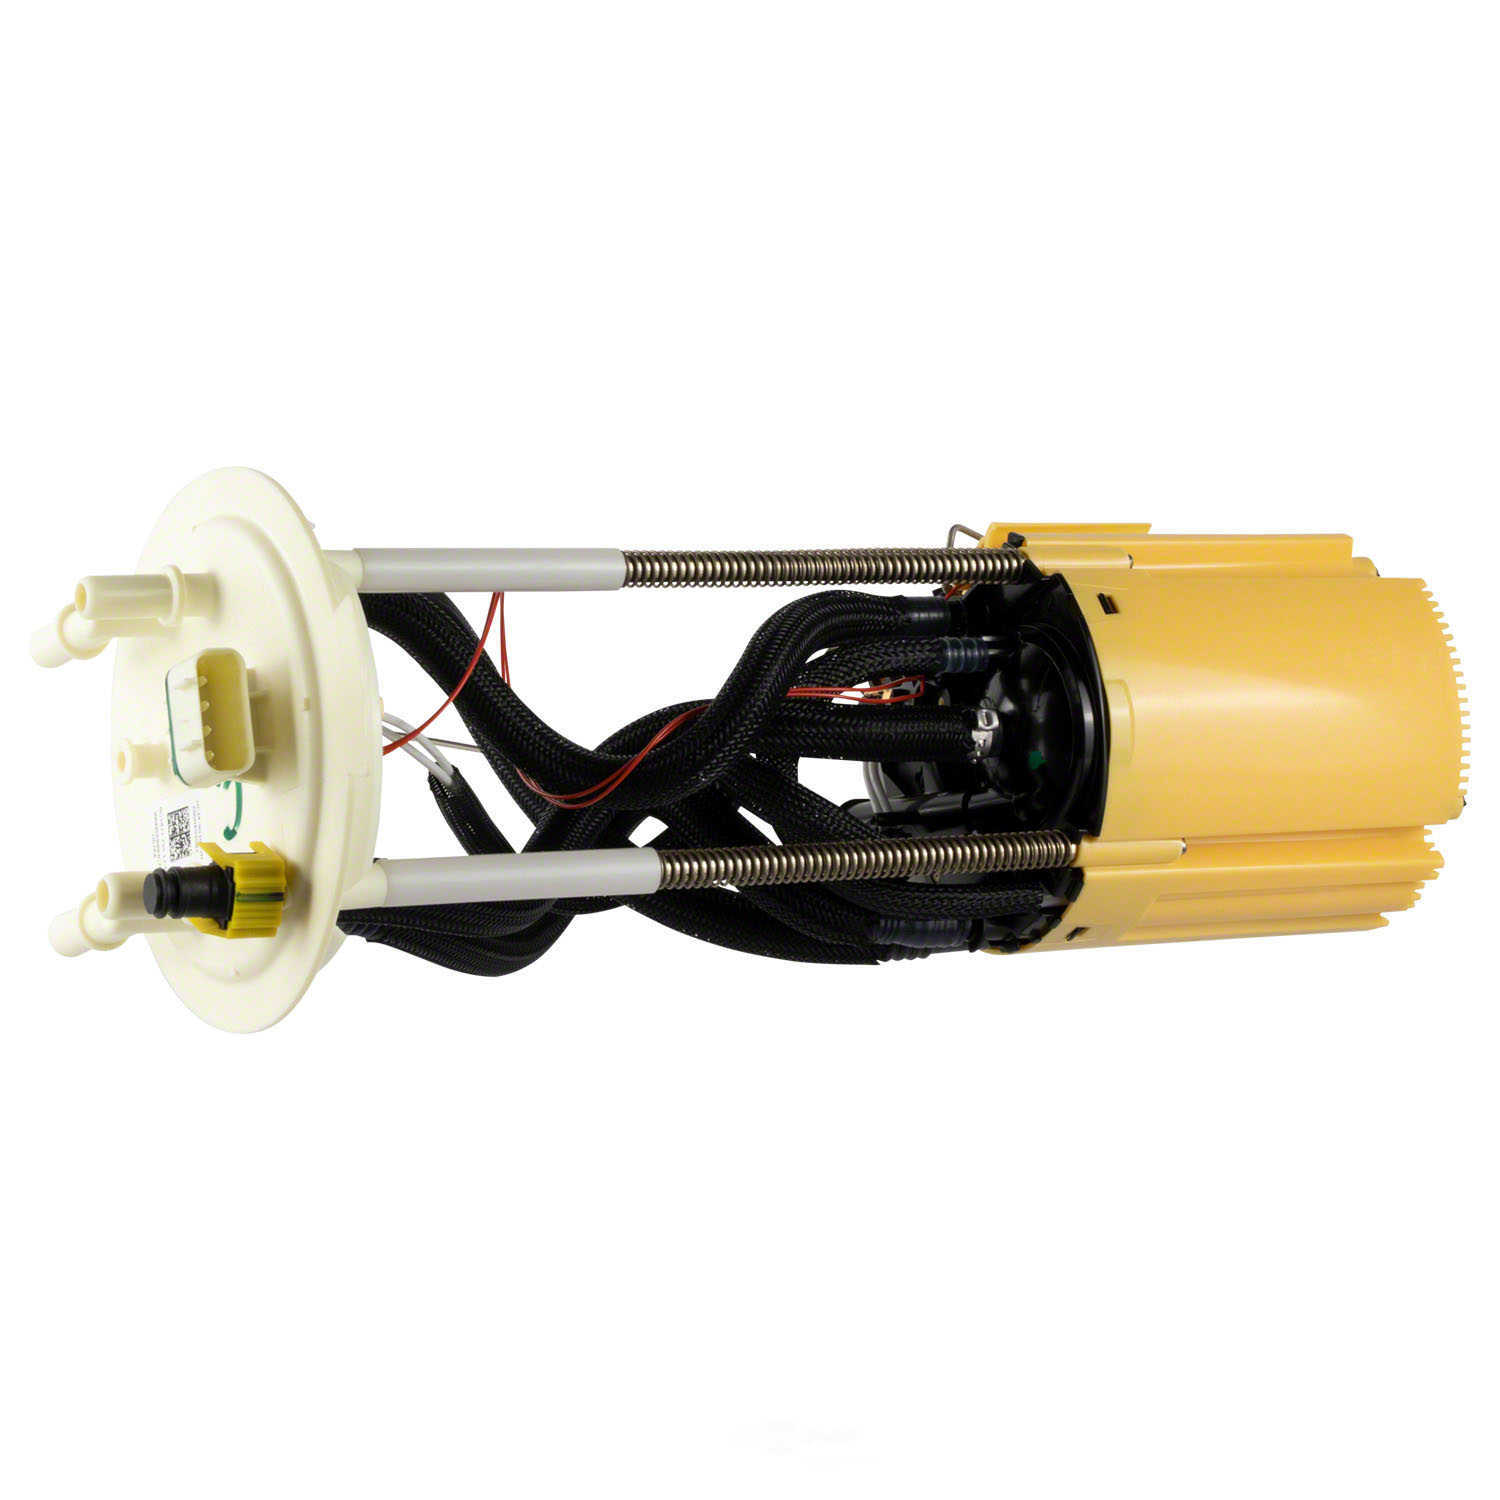 MOTORCRAFT - Fuel Pump And Sender Assembly - MOT PFS-1414